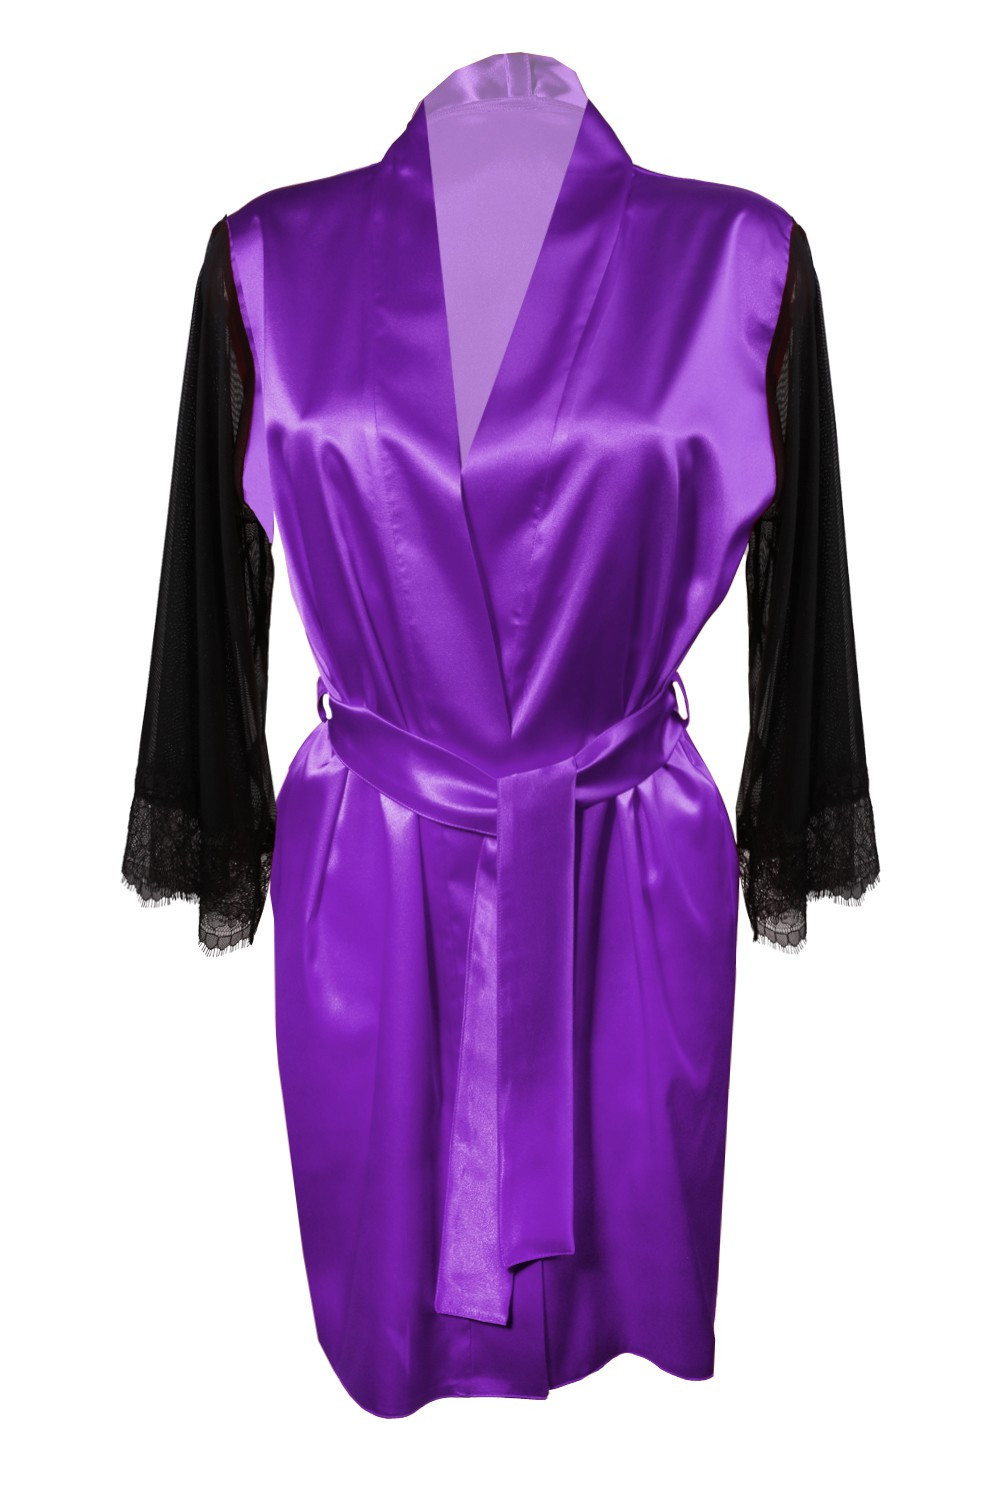 DKaren Housecoat Bonnie Violet 2XL Violet